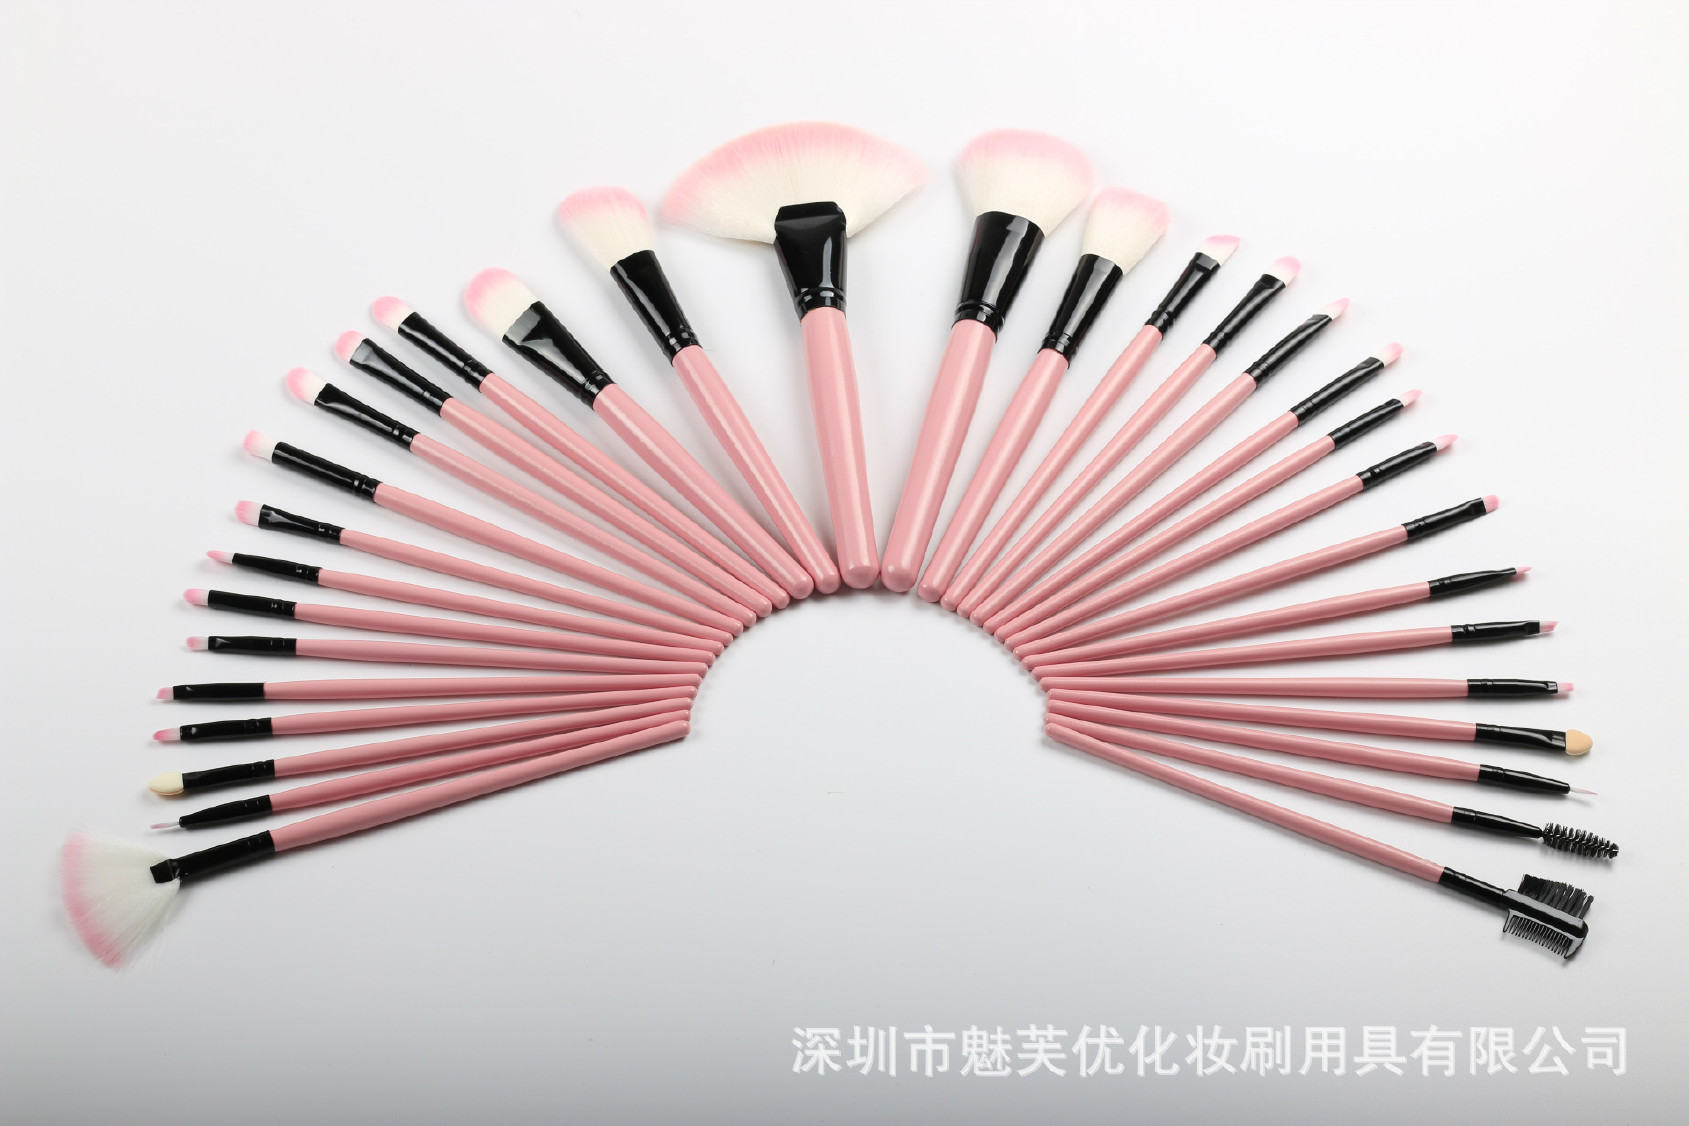 厂家直销32支化妆刷套装 木柄粉色、黑色美妆工具 支持定制示例图7